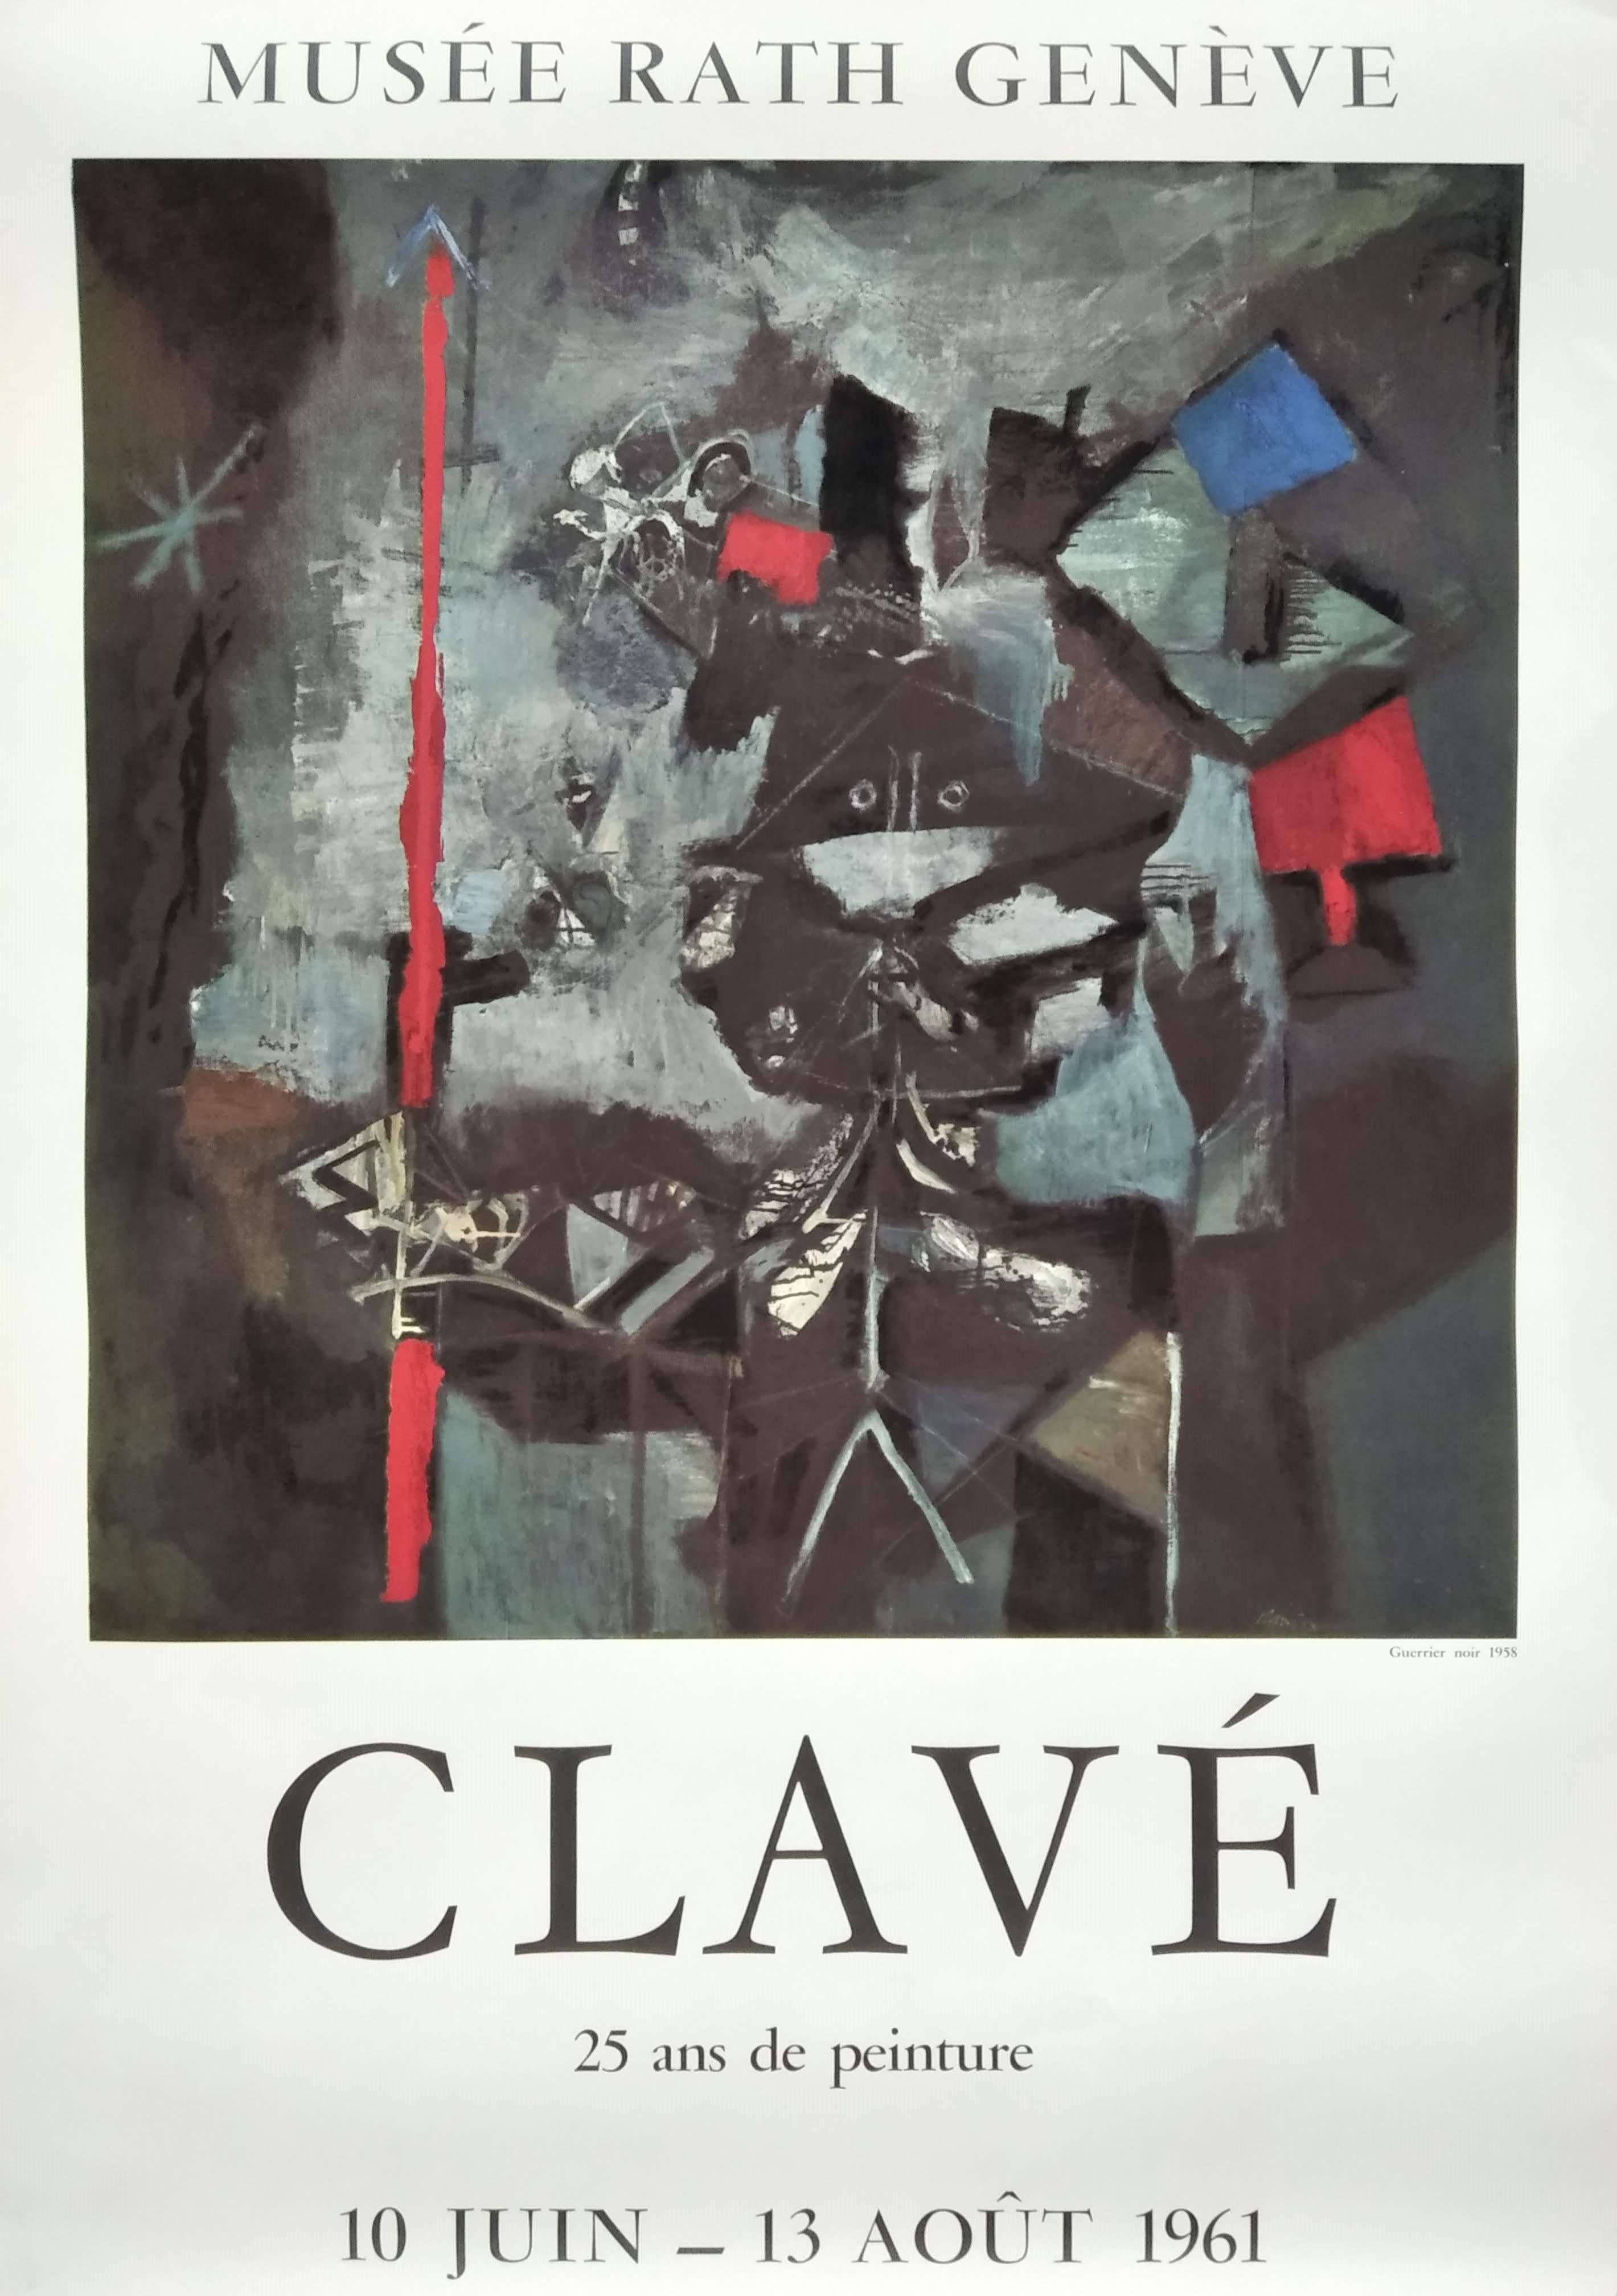 Antoni Clavé Abstract Print - Musée Rath Genève. CLAVÉ: 25 ans de peinture. 10 juin - 13 août 1961